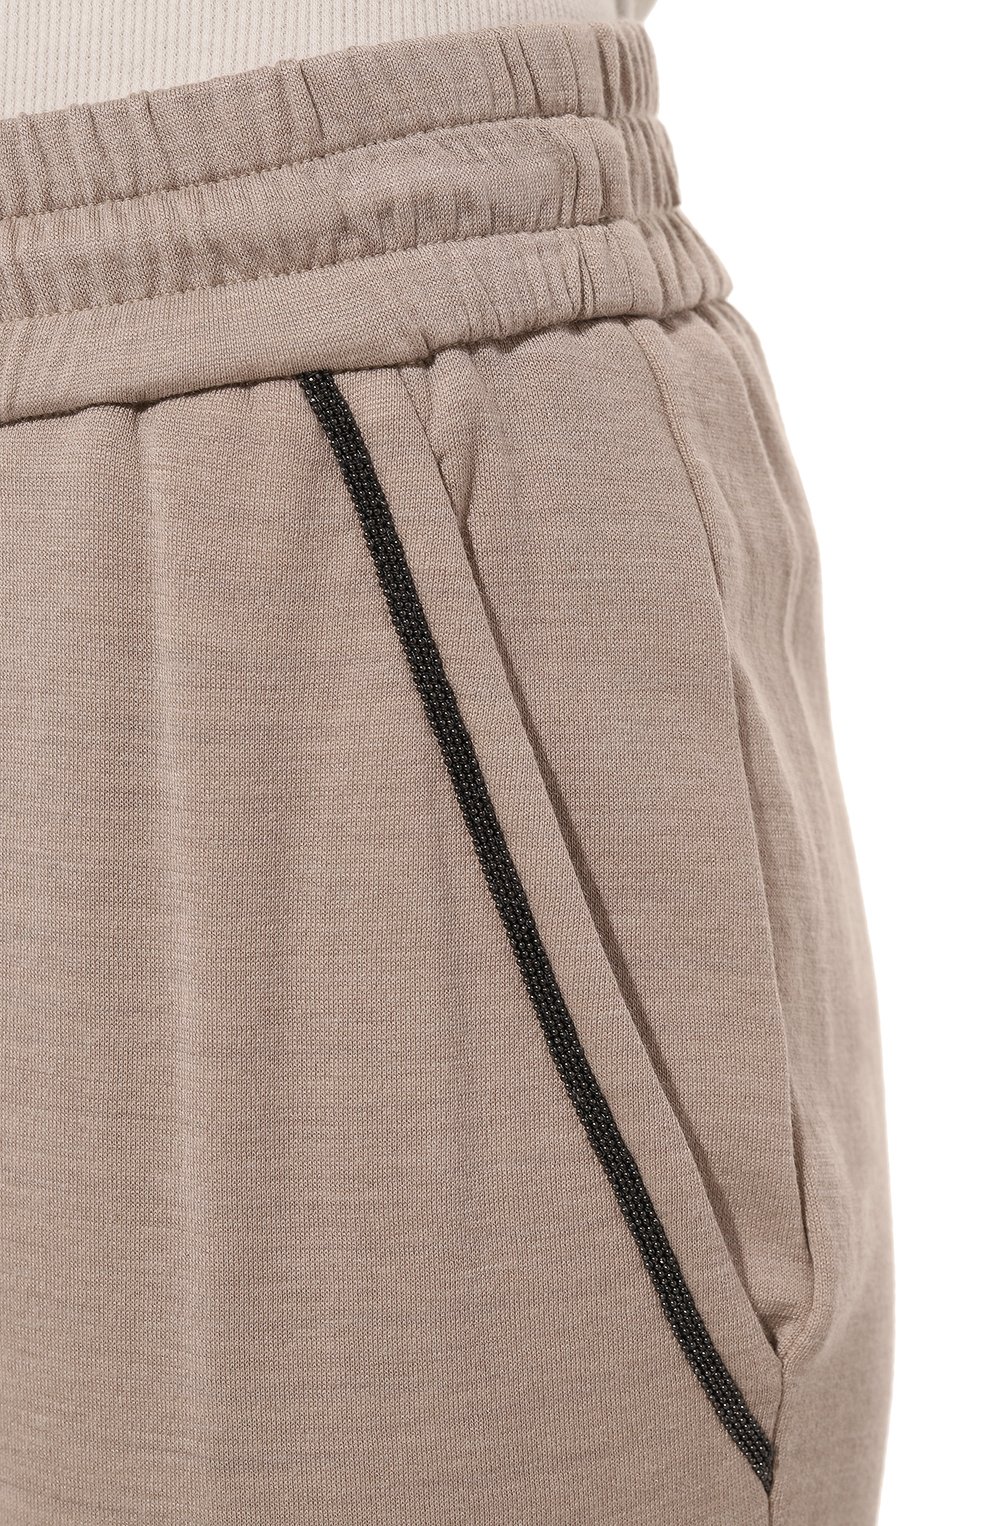 Женские брюки из хлопка и шелка BRUNELLO CUCINELLI бежевого цвета, арт. MD828B1066 | Фото 5 (Материал внешний: Шелк, Хлопок; Длина (брюки, джинсы): Стандартные; Женское Кросс-КТ: Брюки-одежда; Силуэт Ж (брюки и джинсы): Узкие; Стили: Кэжуэл)